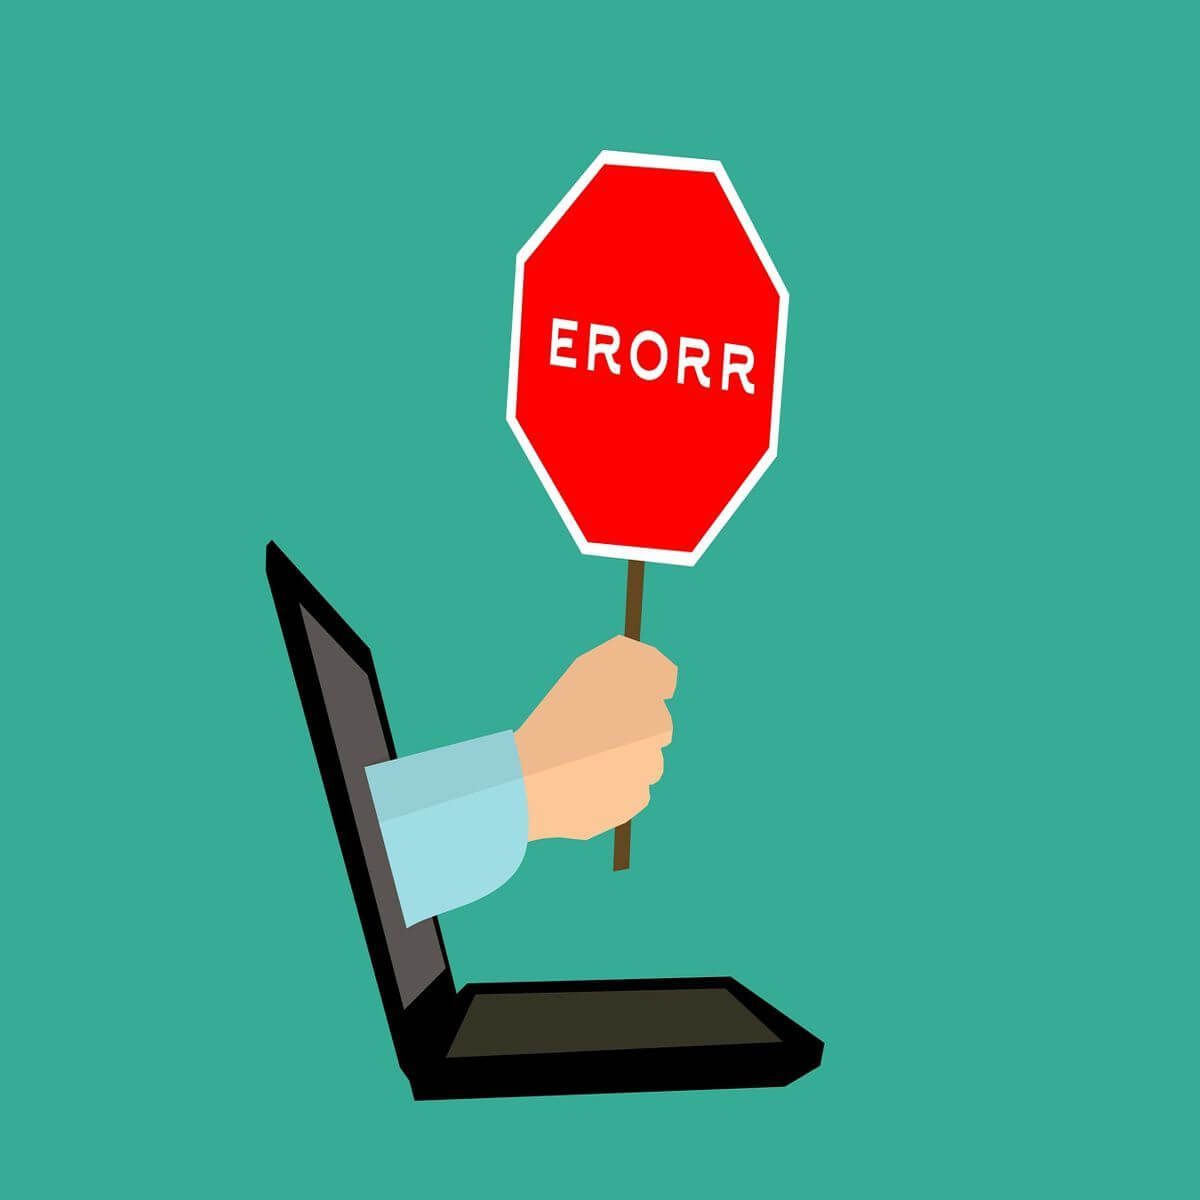 Erros de instalação de software: se você instalou recentemente algum software, verifique se ele é compatível com o sistema operacional e se está corretamente instalado.
Problemas de atualização do sistema: atualizações mal sucedidas podem causar erros de inicialização. Verifique se todas as atualizações do sistema estão instaladas corretamente.